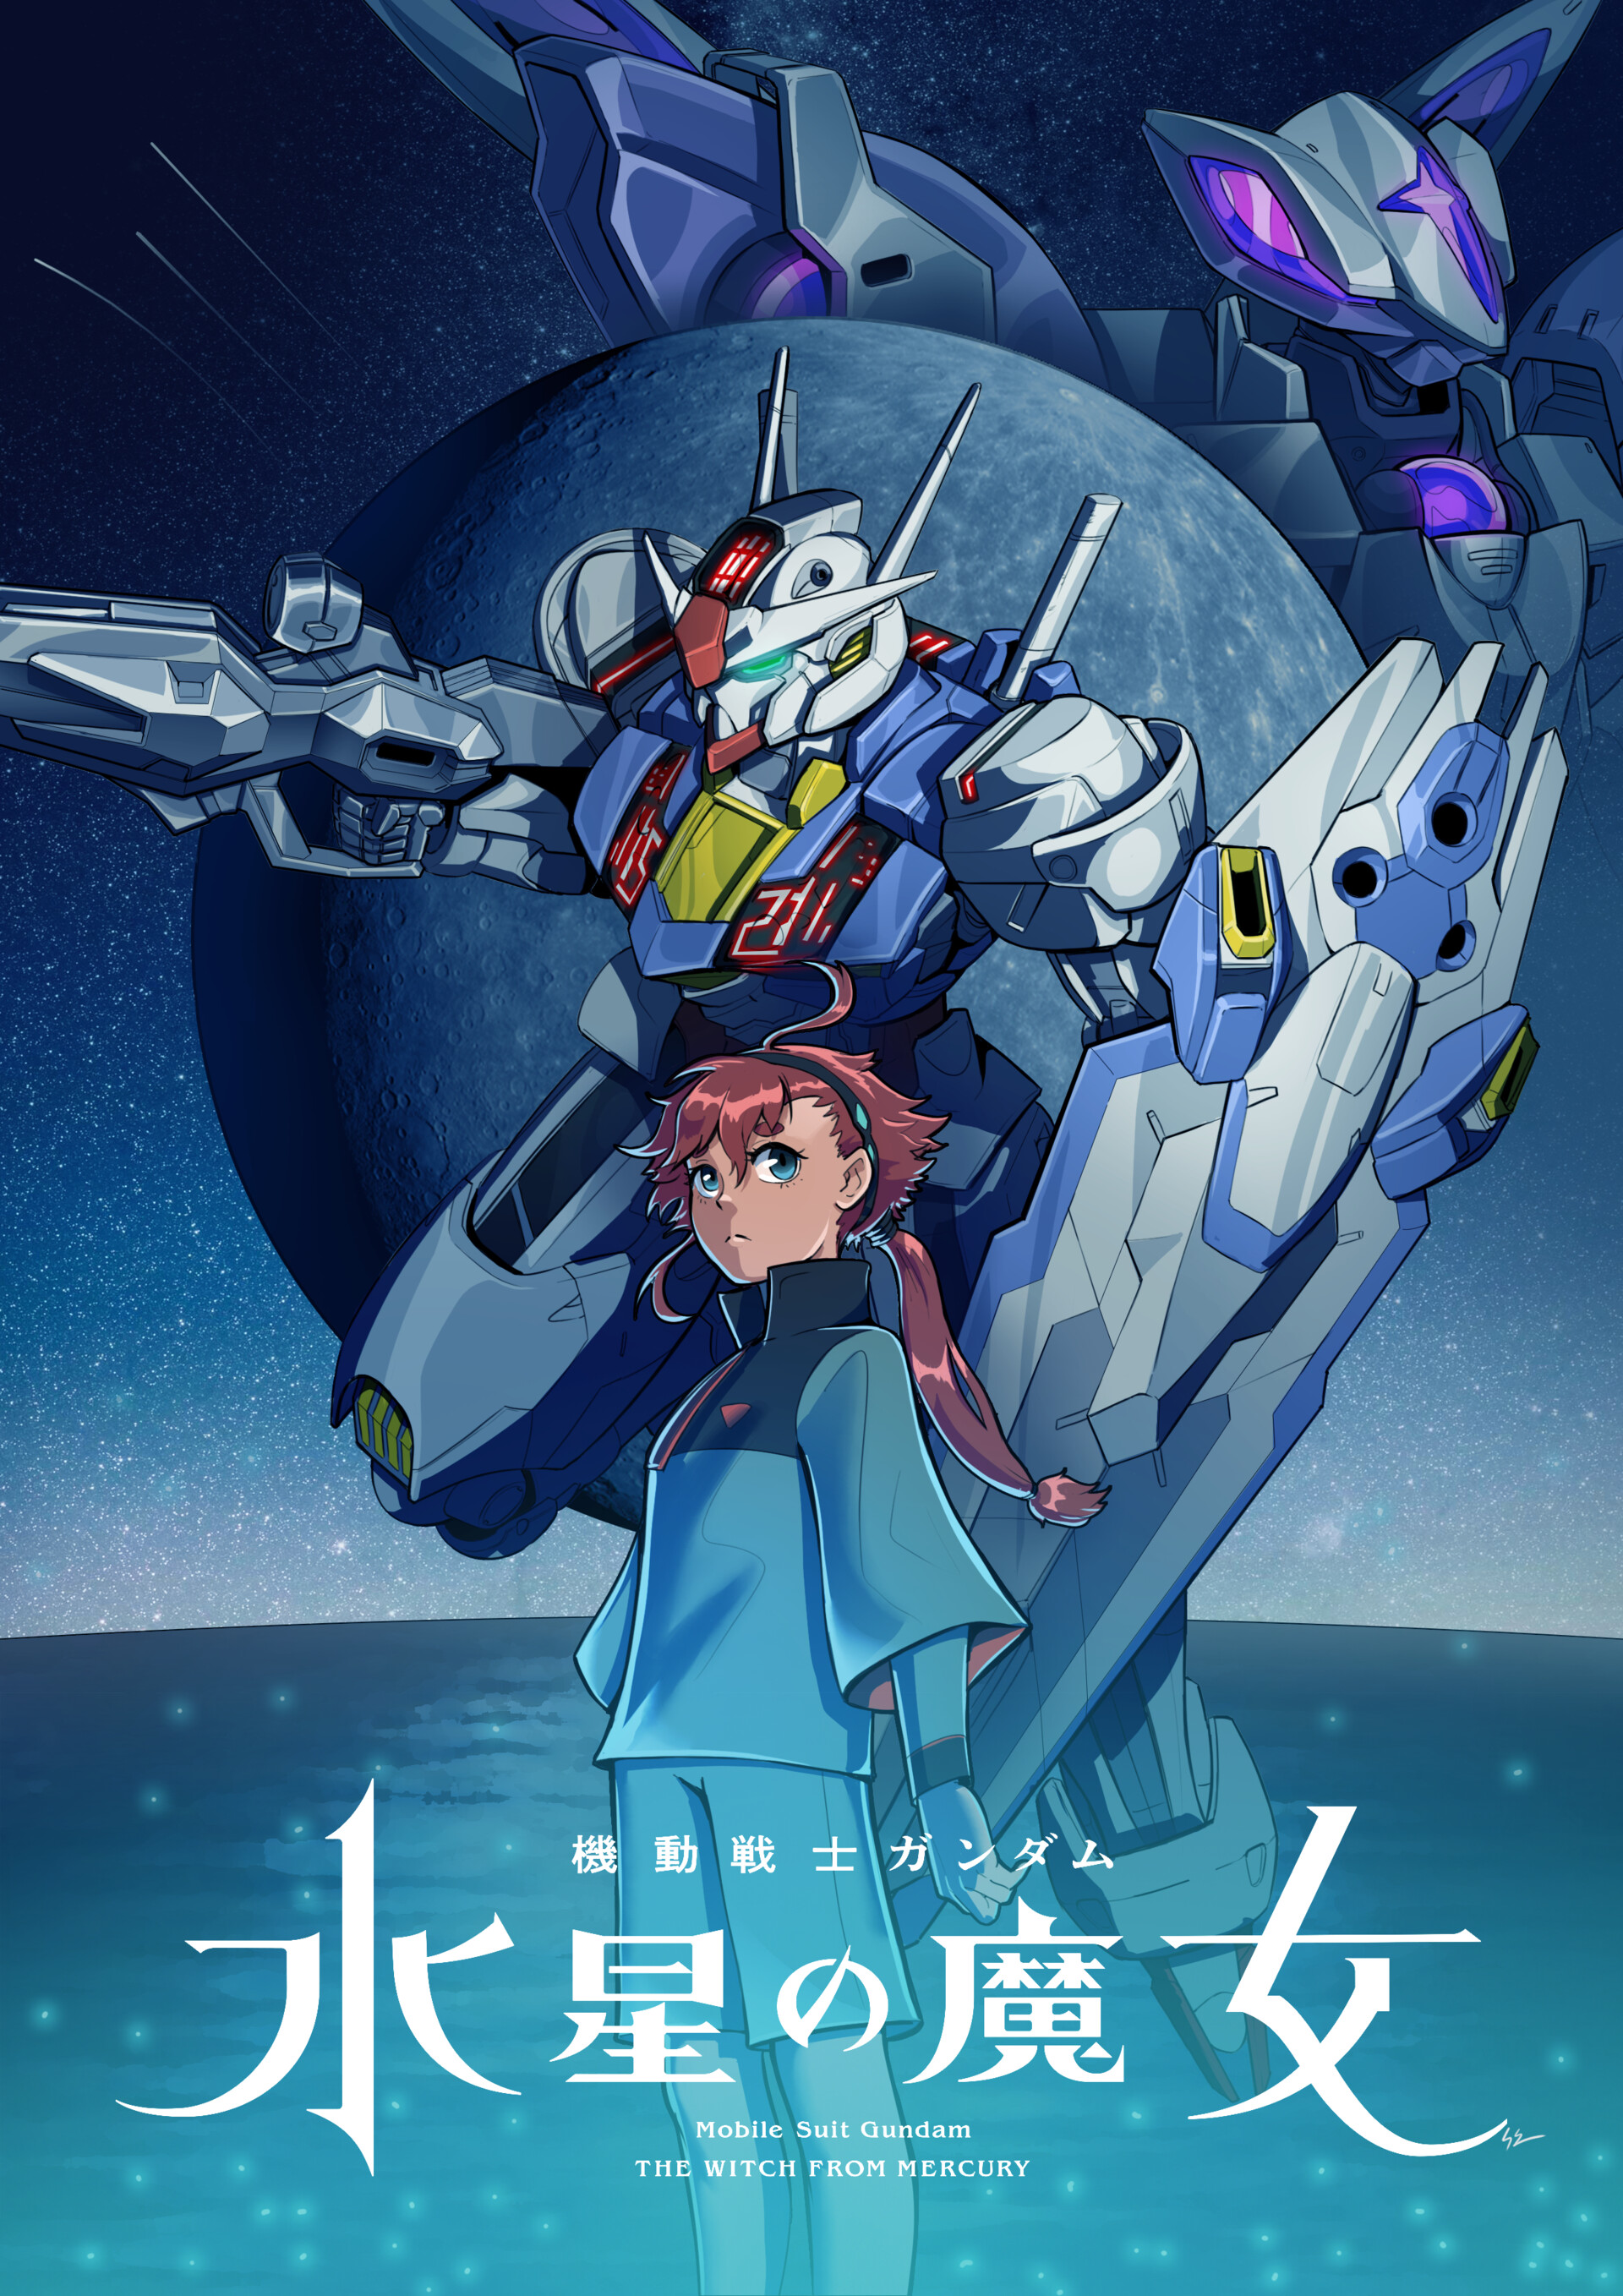 Wallpaper  anime mechs Super Robot Taisen Mobile Suit Gundam THE WITCH  FROM MERCURY Gundam Aerial artwork digital art fan art 1240x1754   AlbinonnR  2151443  HD Wallpapers  WallHere